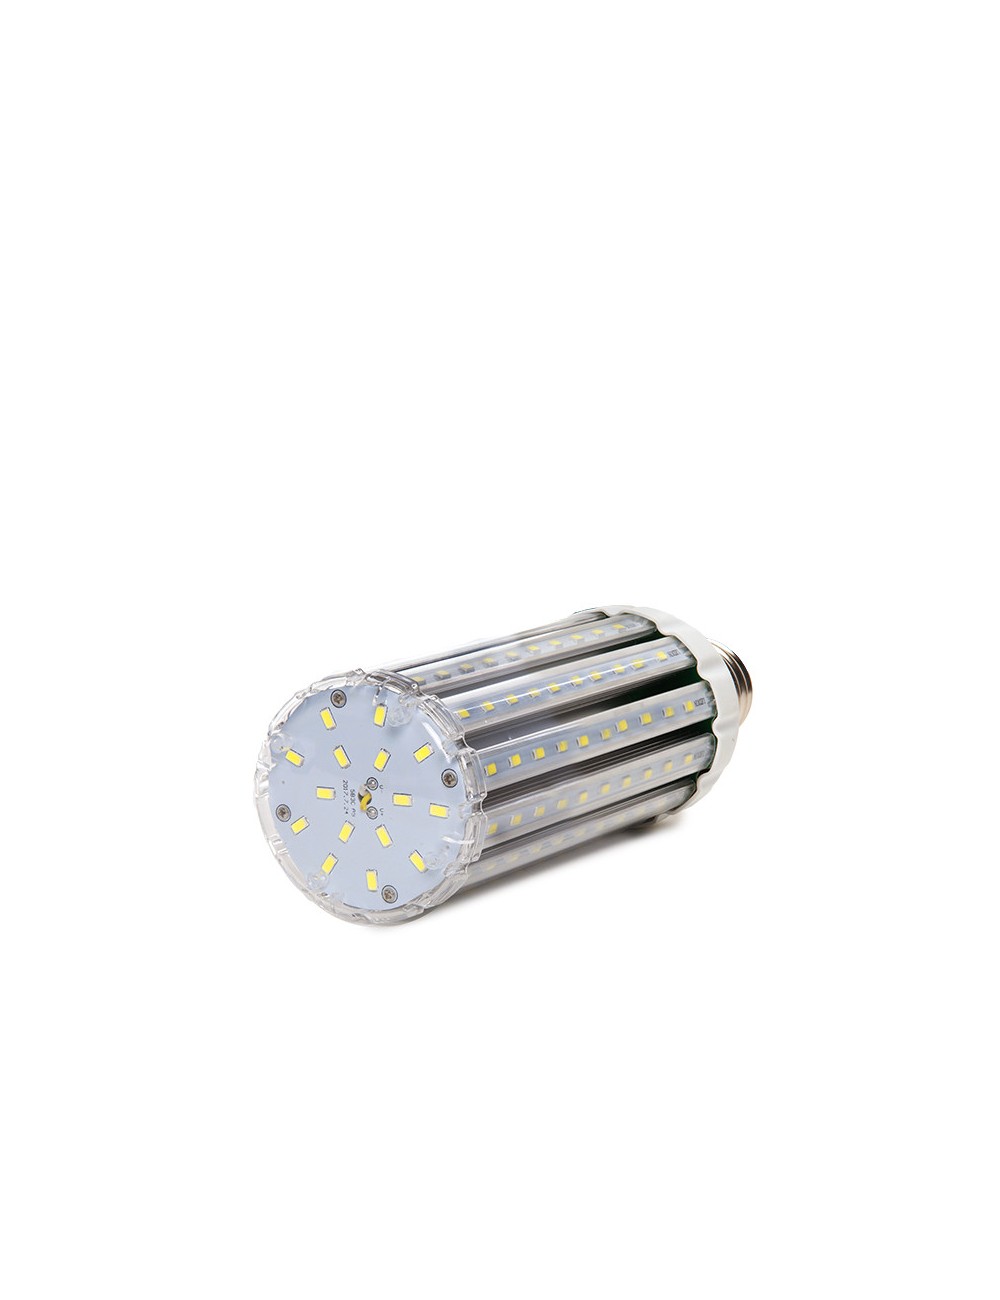 Ampoule LED E40 40W 5.200Lm 6000ºK  Eclairage Publique 50.000H [LT-CL6-40W-CW]